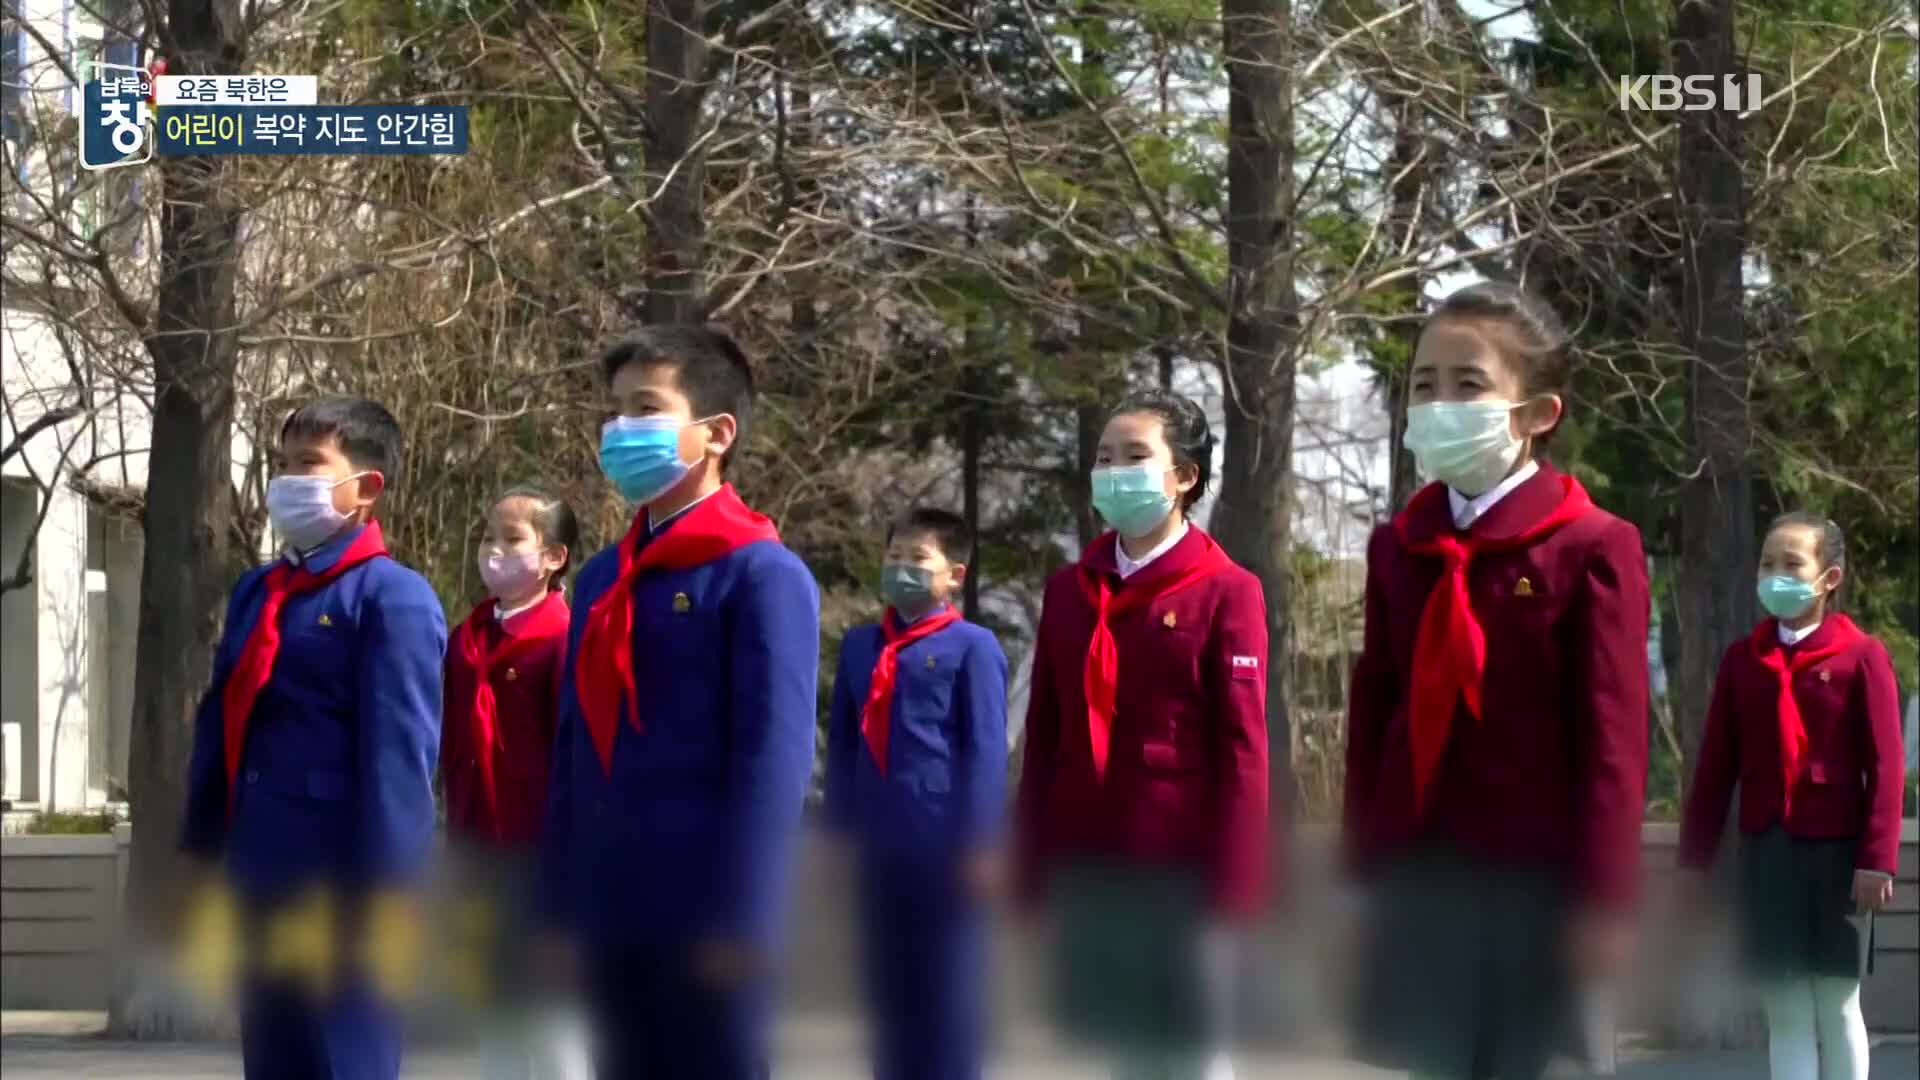 [요즘 북한은] 코로나19 주의보…“어린이를 지켜라” 외